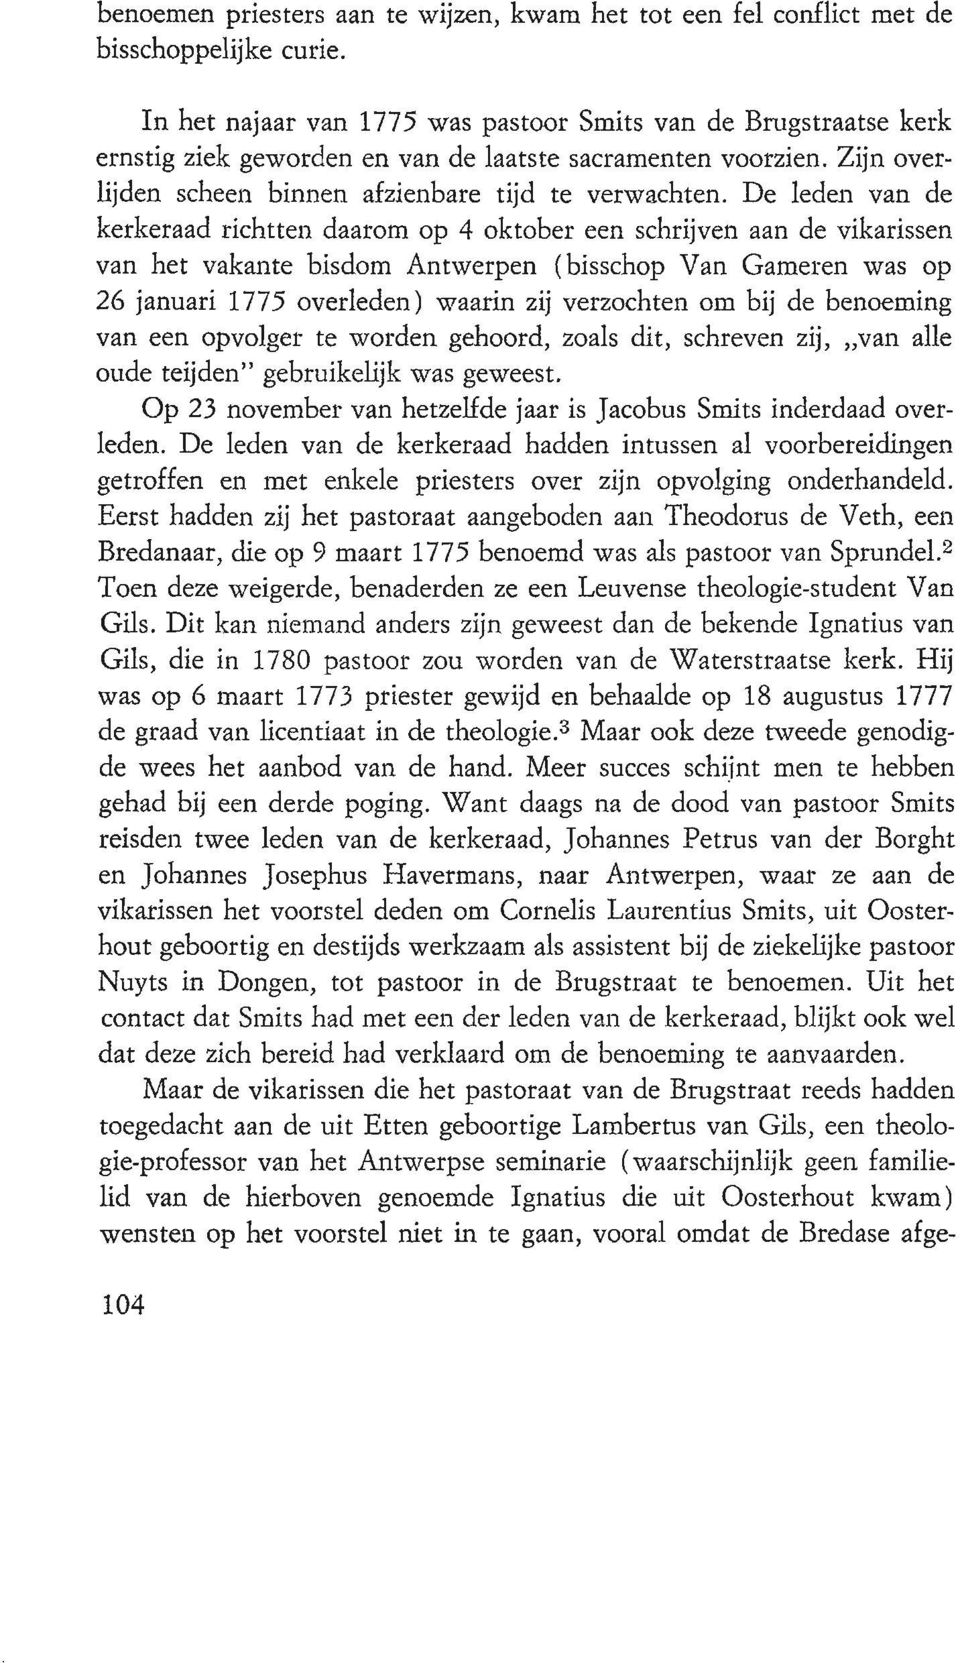 De leden van de kerkeraad richtten daarom op 4 oktober een schrijven aan de vikarissen van het vakante bisdom Antwerpen (bisschop Van Garneren was op 26 januari 1775 overleden) waarin zij verzochten